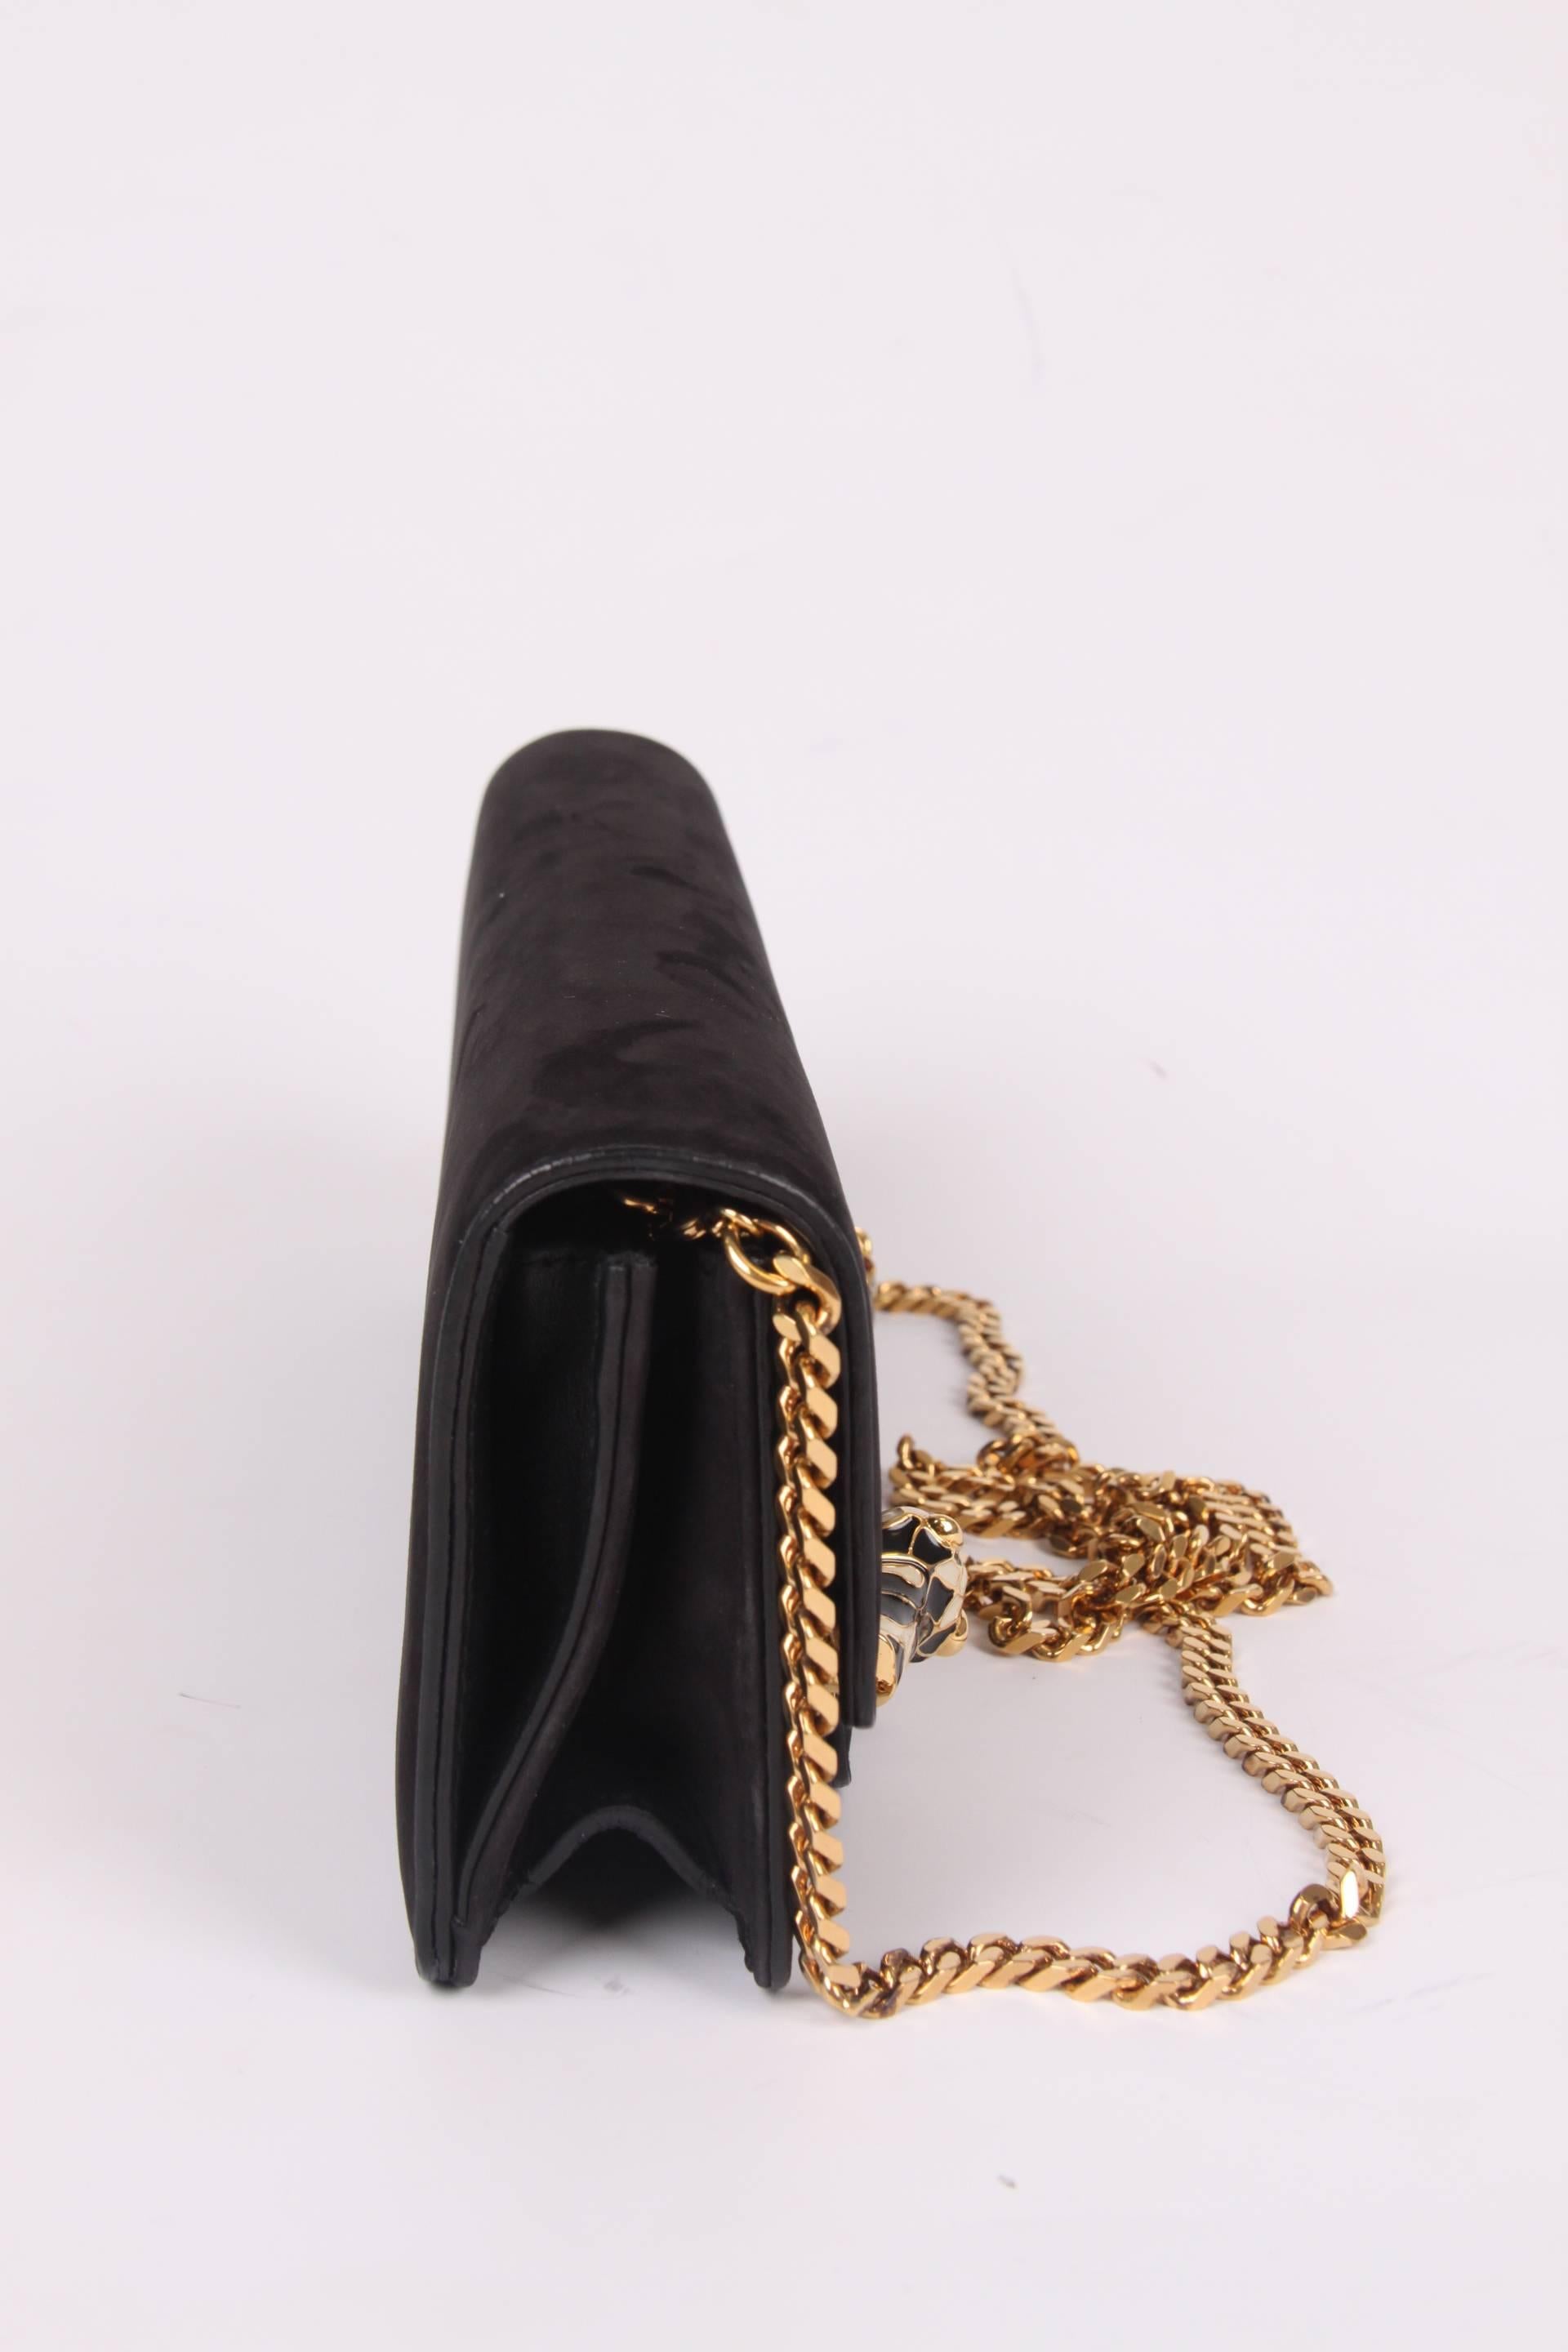 Gucci Tigrette Evening Bag Clutch - black nubuck 2012 4